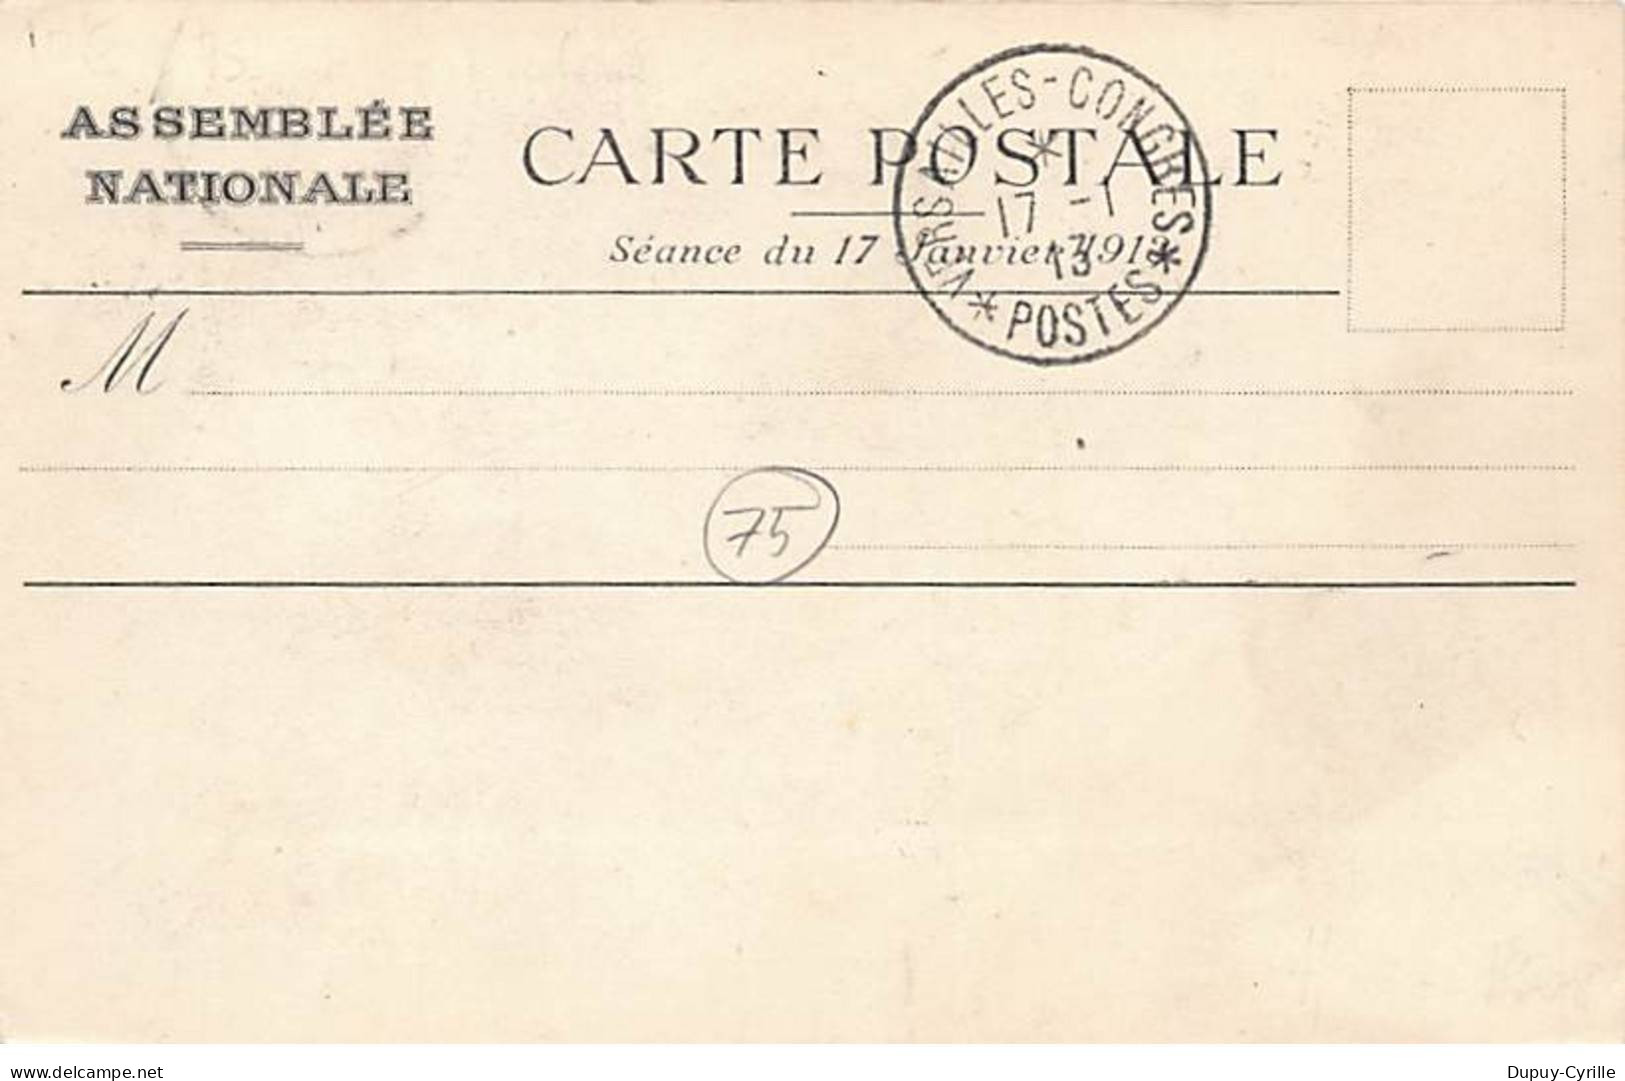 PARIS - Assemblée Nationale - Salle Des Séances - La Séance Du 17 Janvier 1906 - Très Bon état - Arrondissement: 07